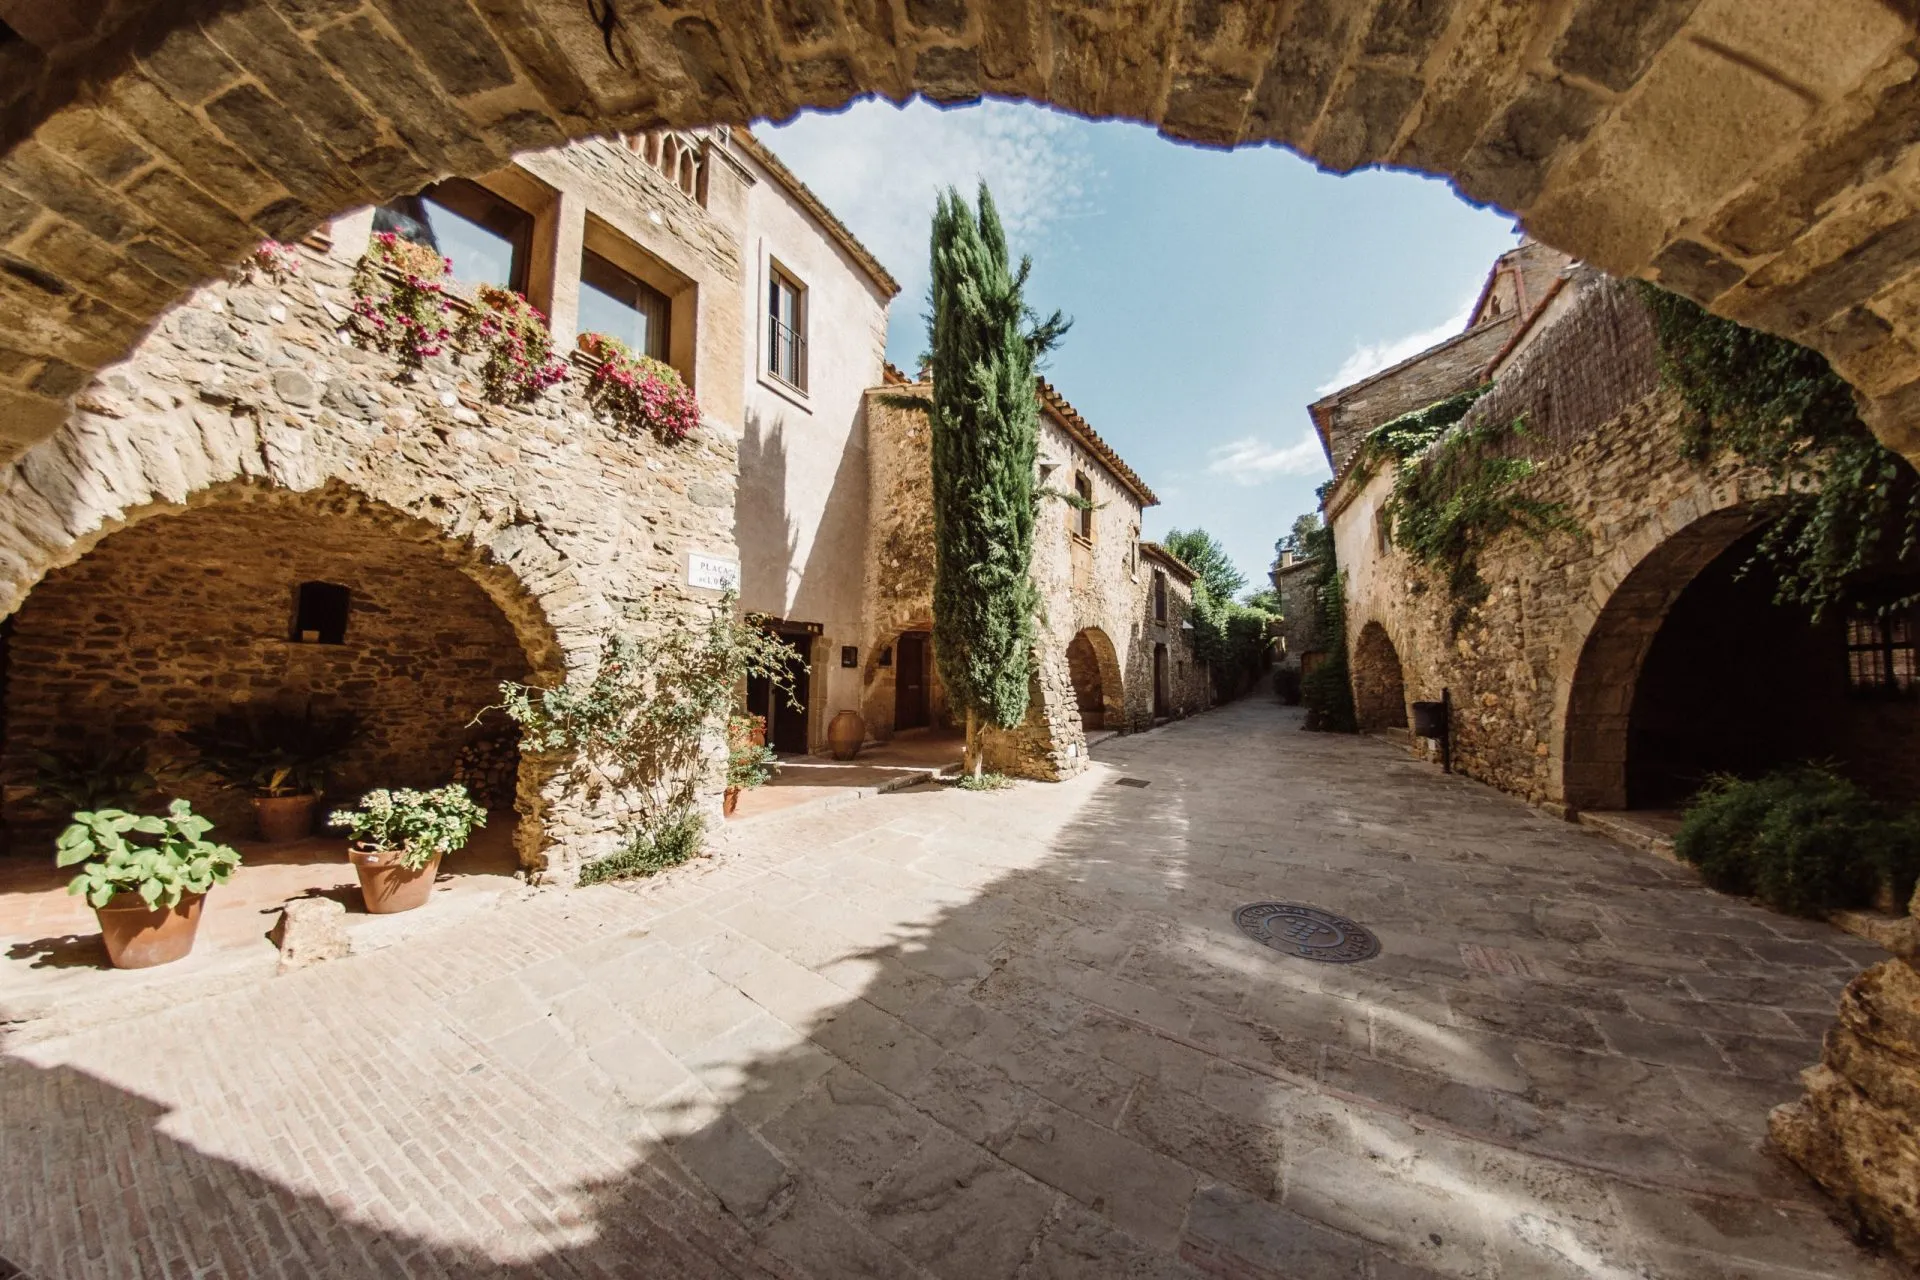 La città medievale e turistica di Monells, sulla Costa Brava, vicino a Girona, nel nord della Catalogna, Spagna.